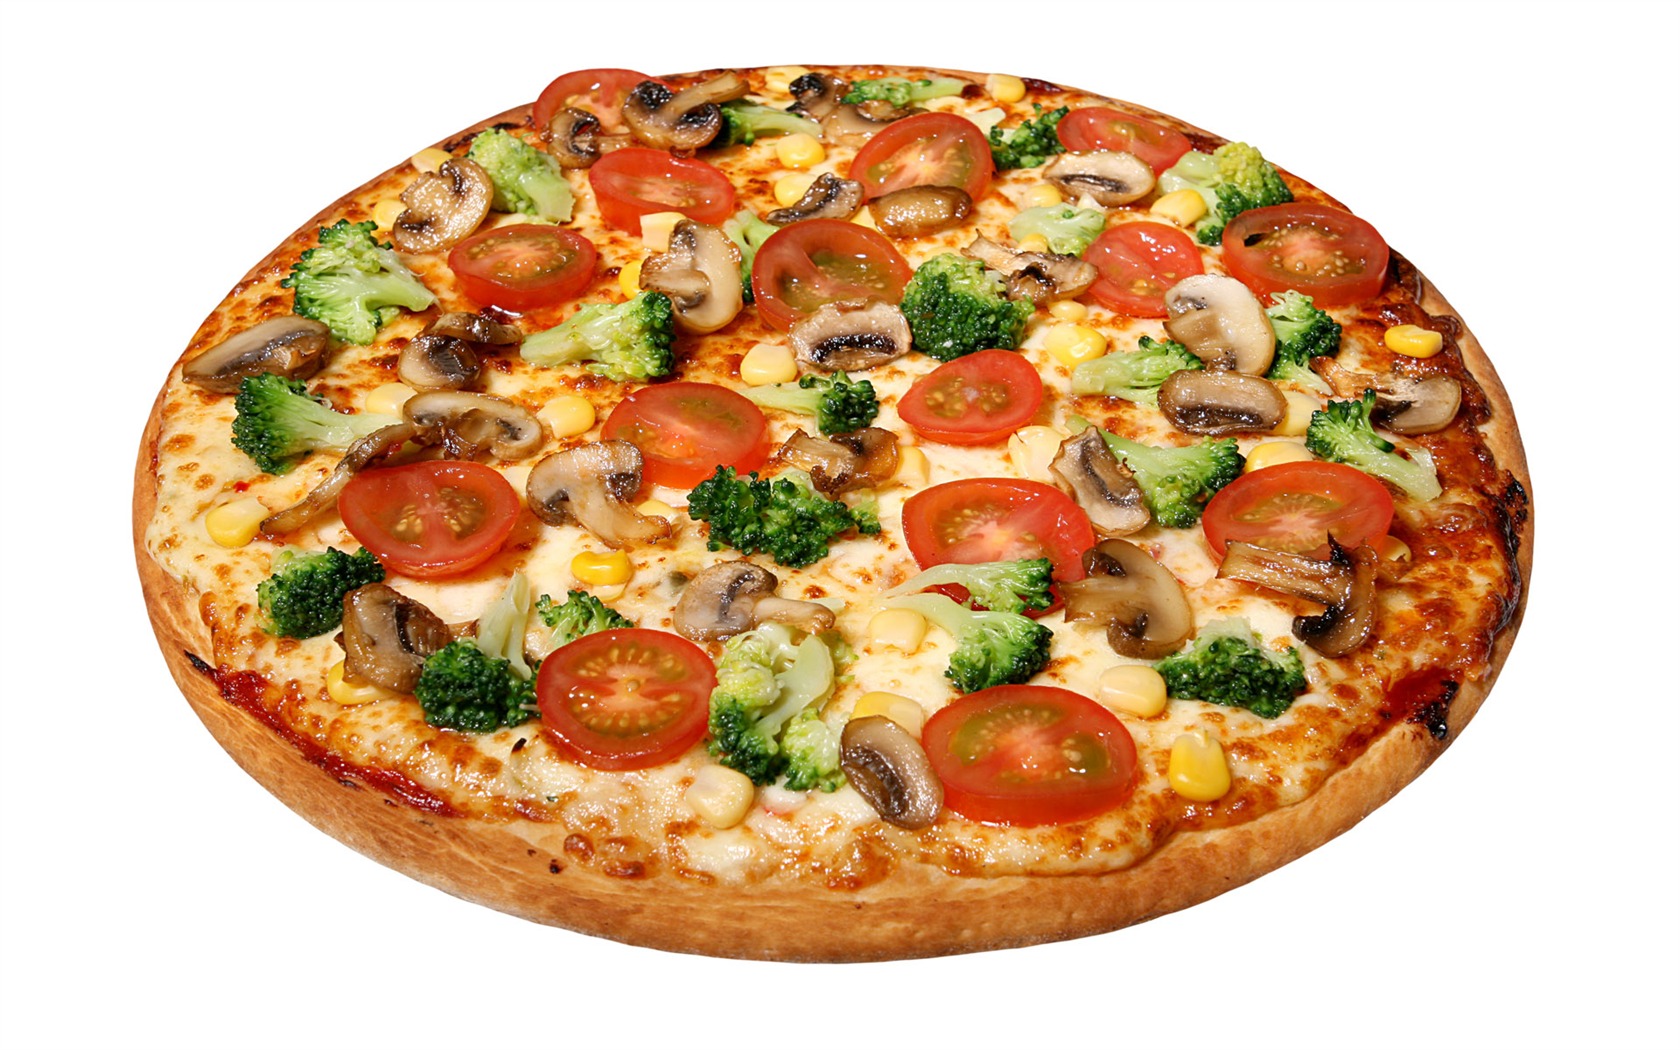 Fondos de pizzerías de Alimentos (4) #18 - 1680x1050